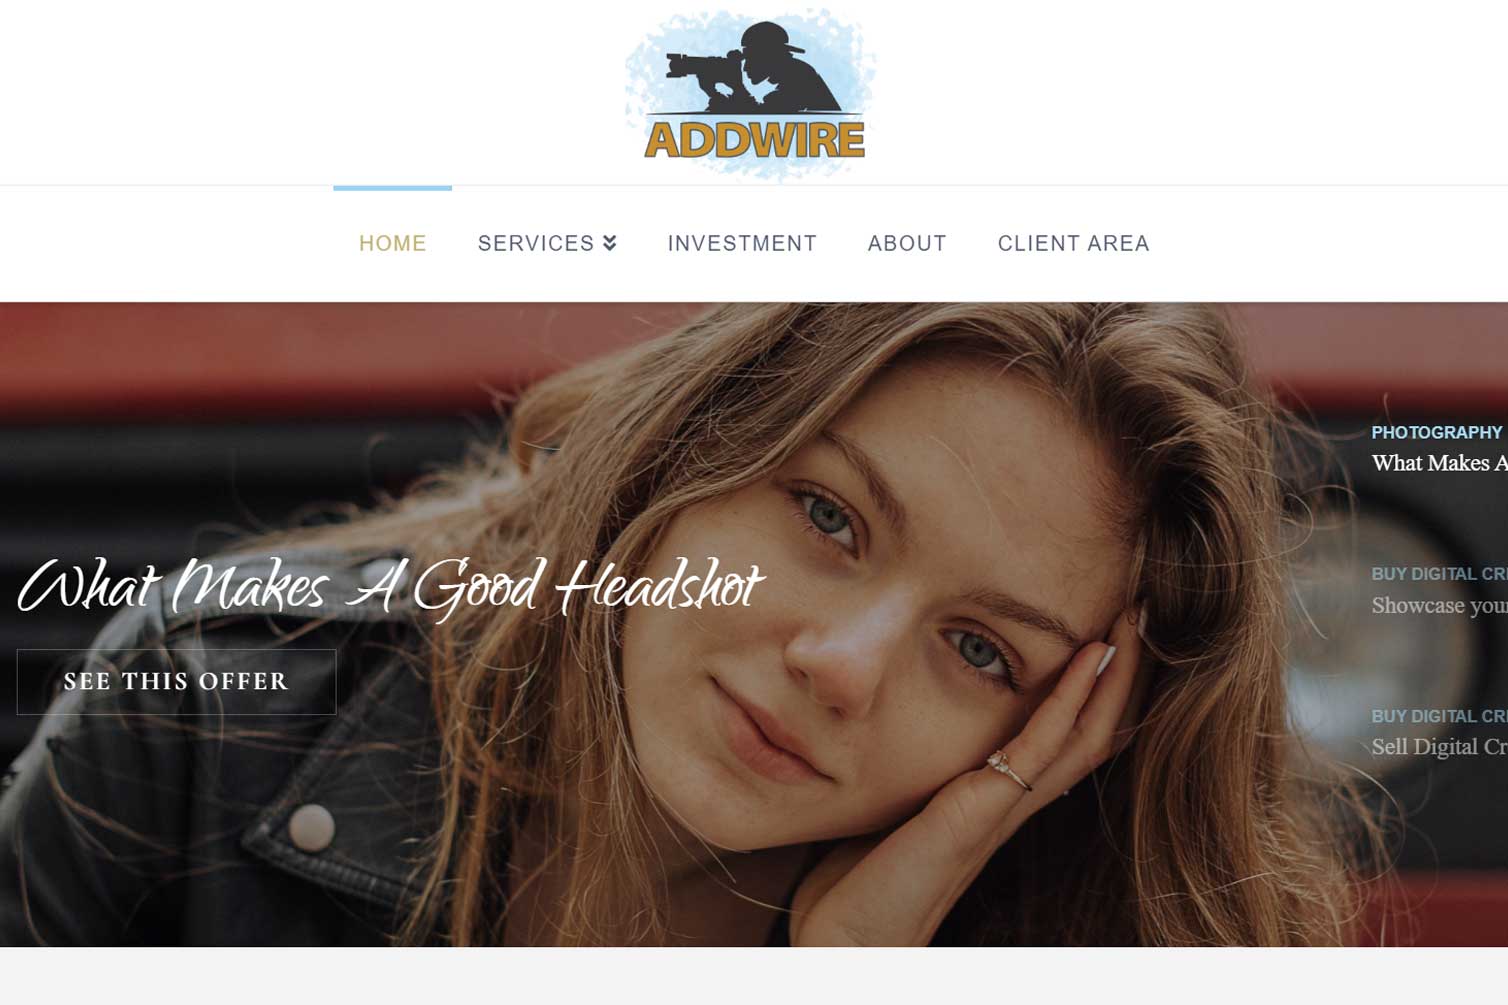 A screenshot of a beauty salon website